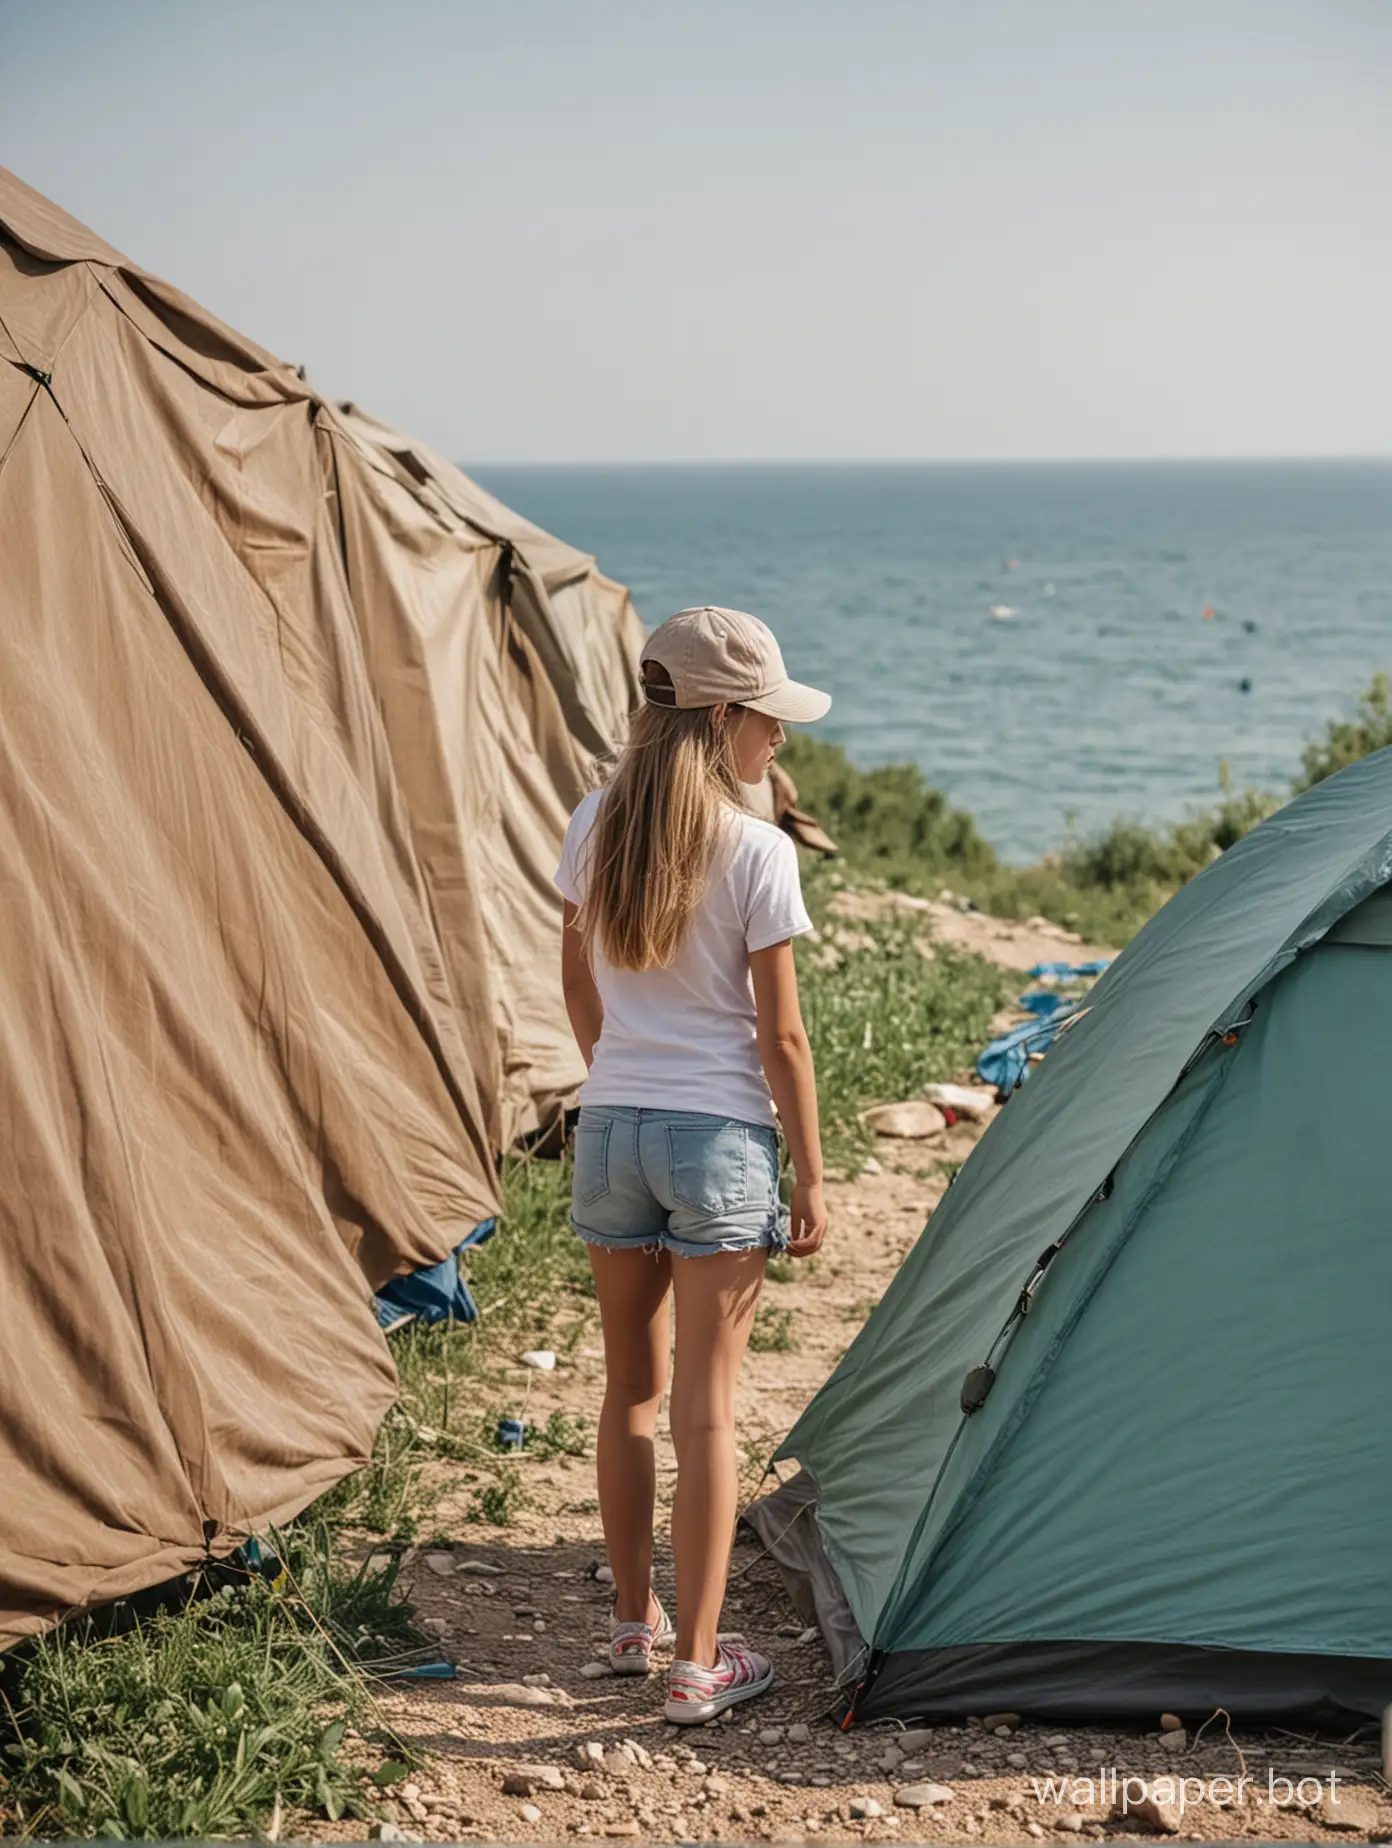 девочка 11 лет в шортиках и кепочке у палатки вдалеке, Крым, море вдалеке, в полный рост, палатки вдалеке, динамичные позы, вид сзади